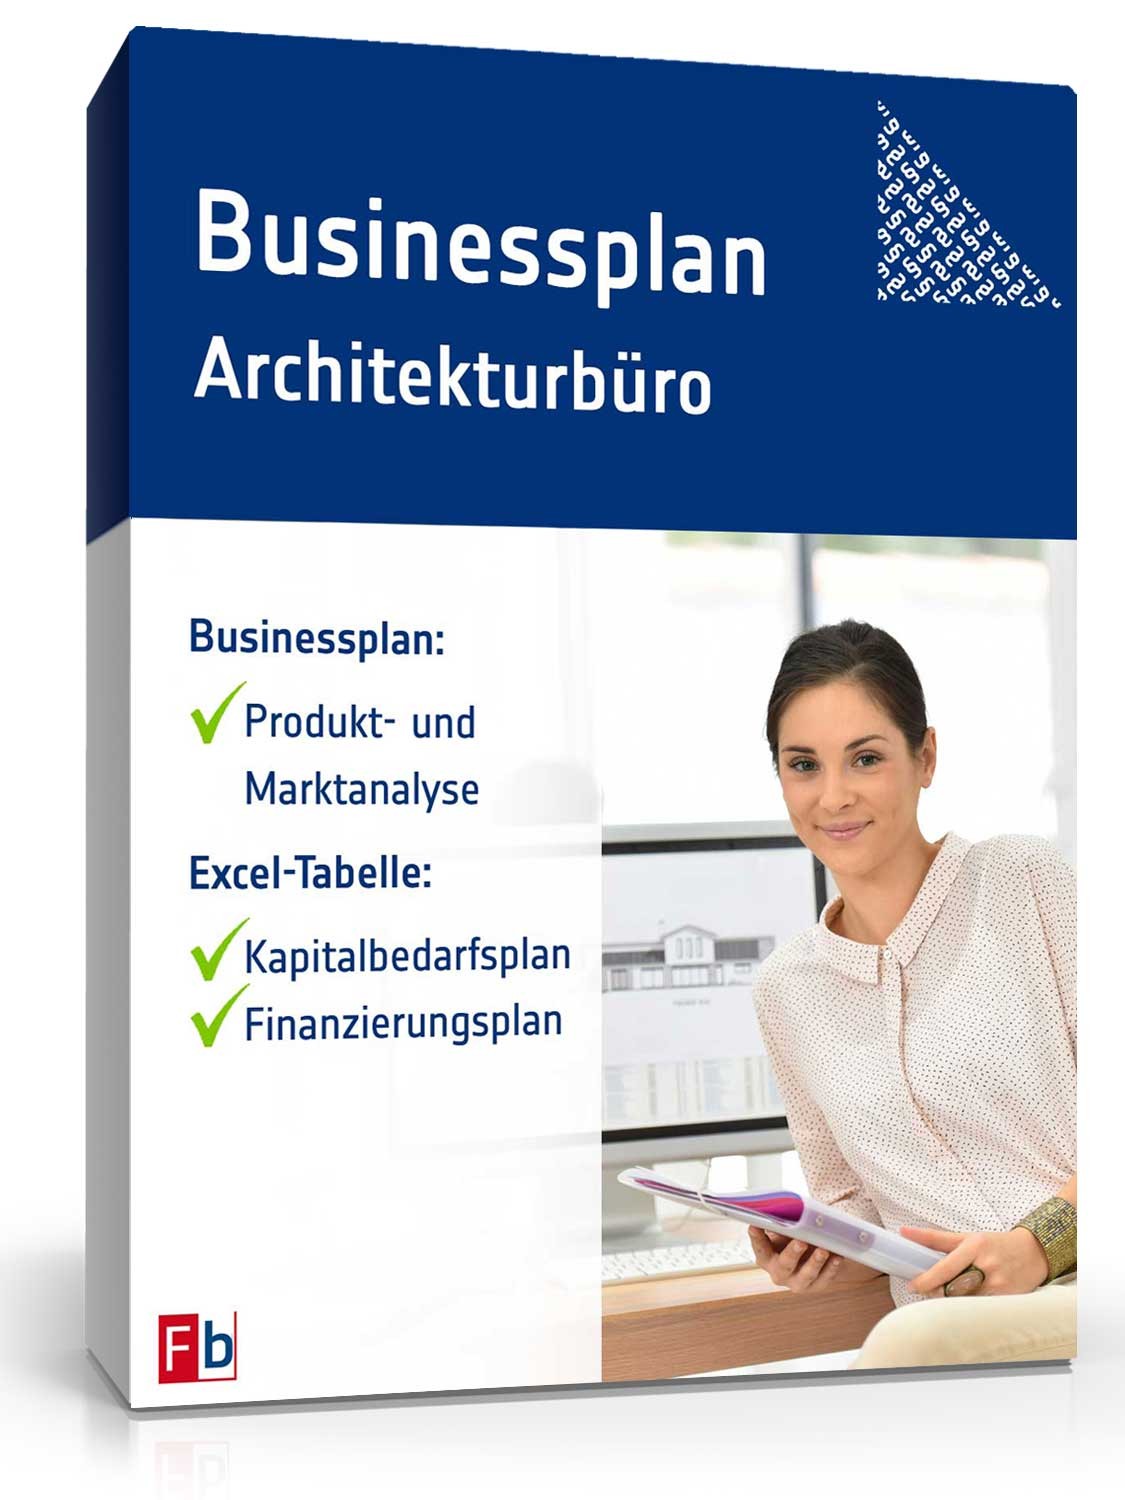 Hauptbild des Produkts: Businessplan Architekturbüro